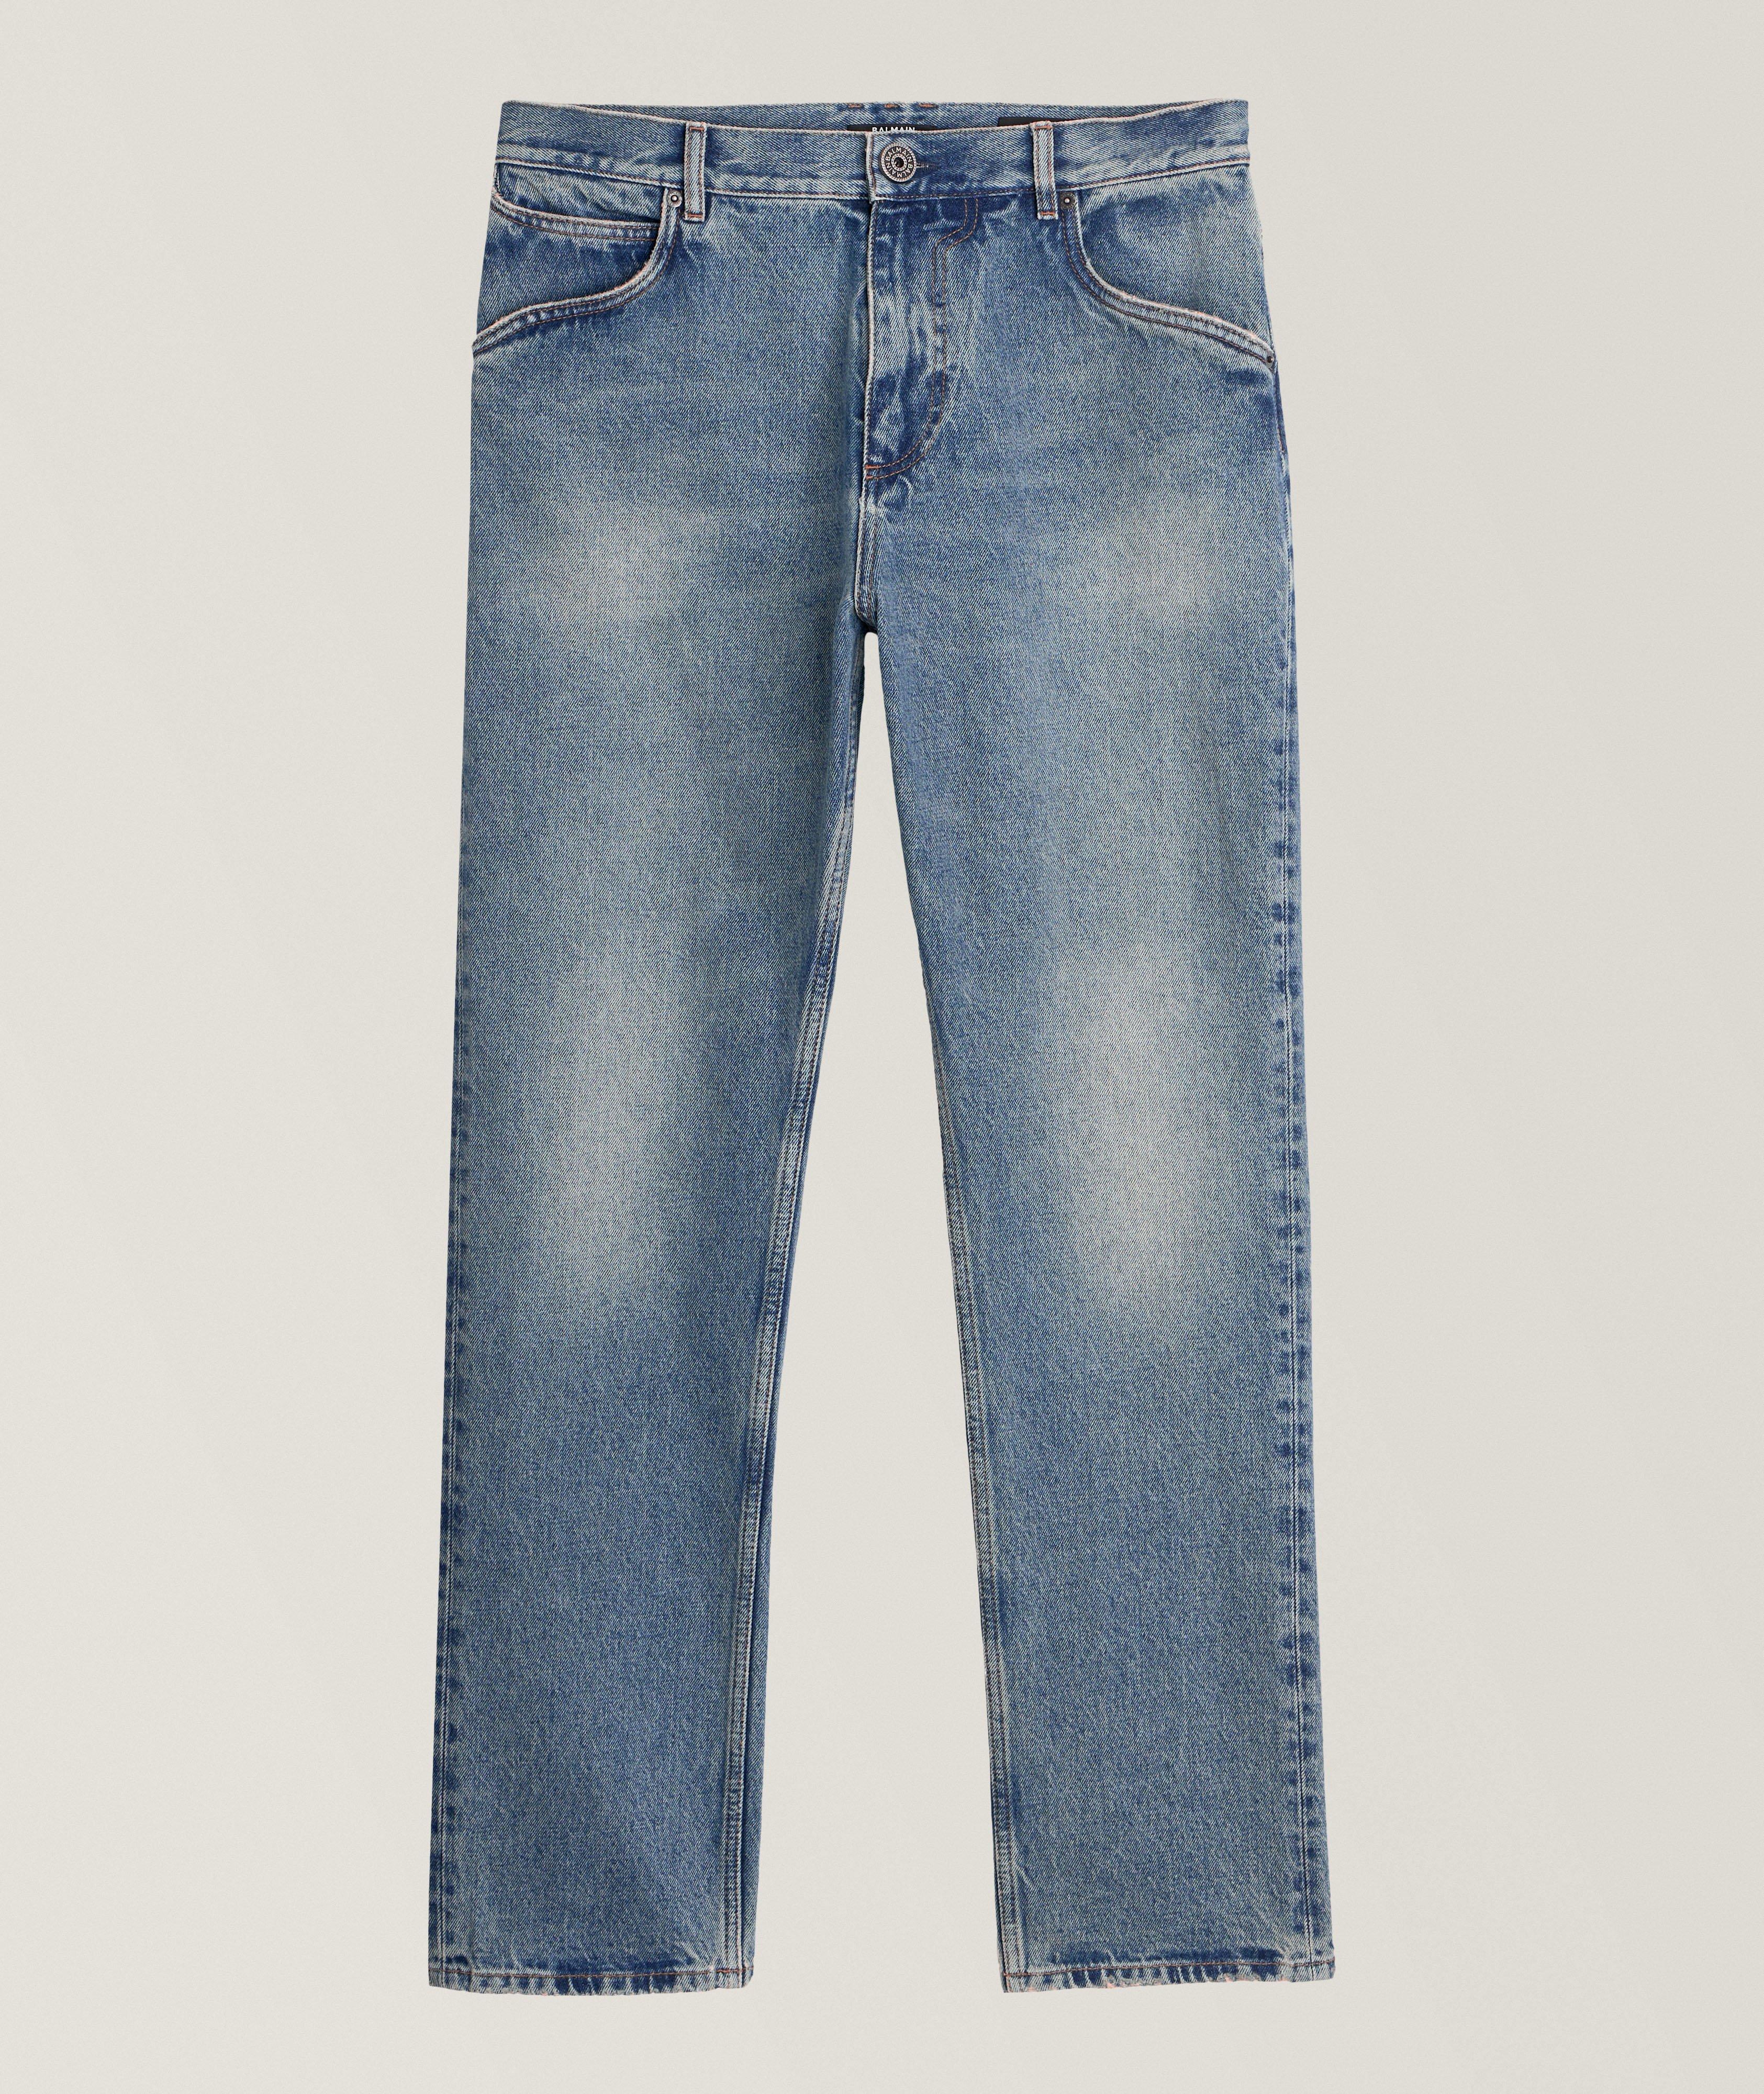 Vintage Wash Denim Jeans image 0